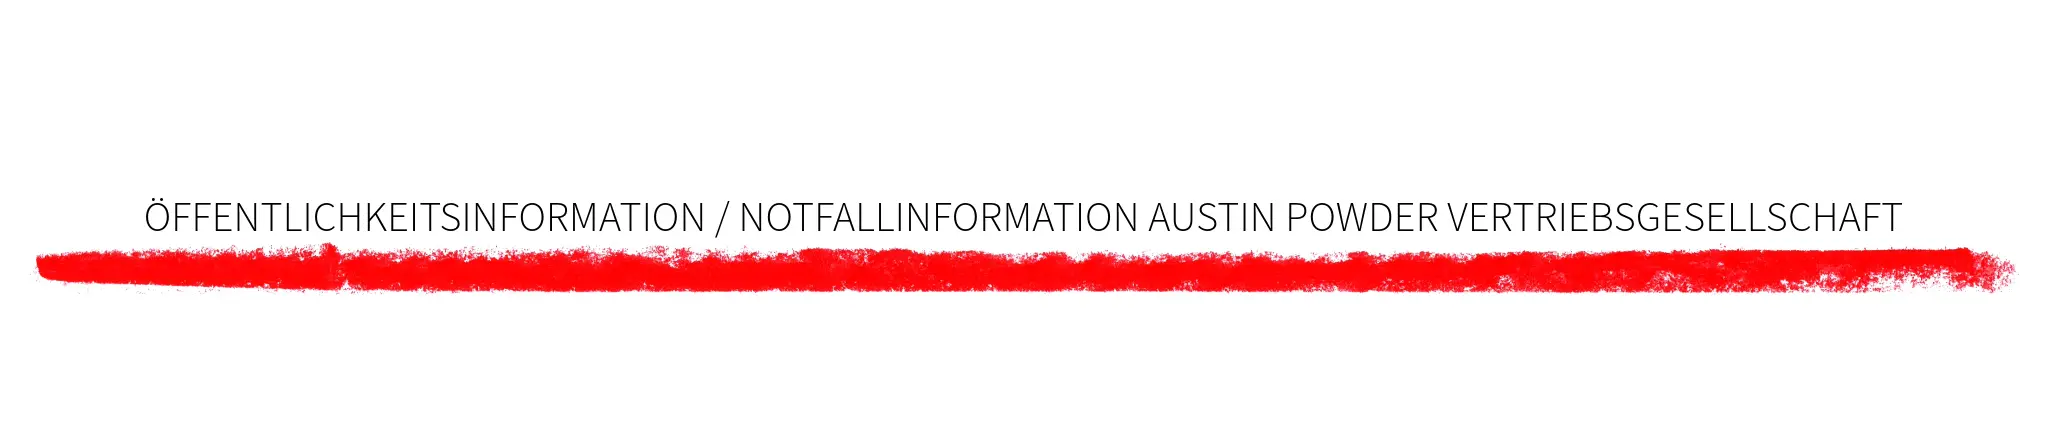 Offentlichkeitsinformation / Notfallinformation Austin Powder Vertribsgesellschaft